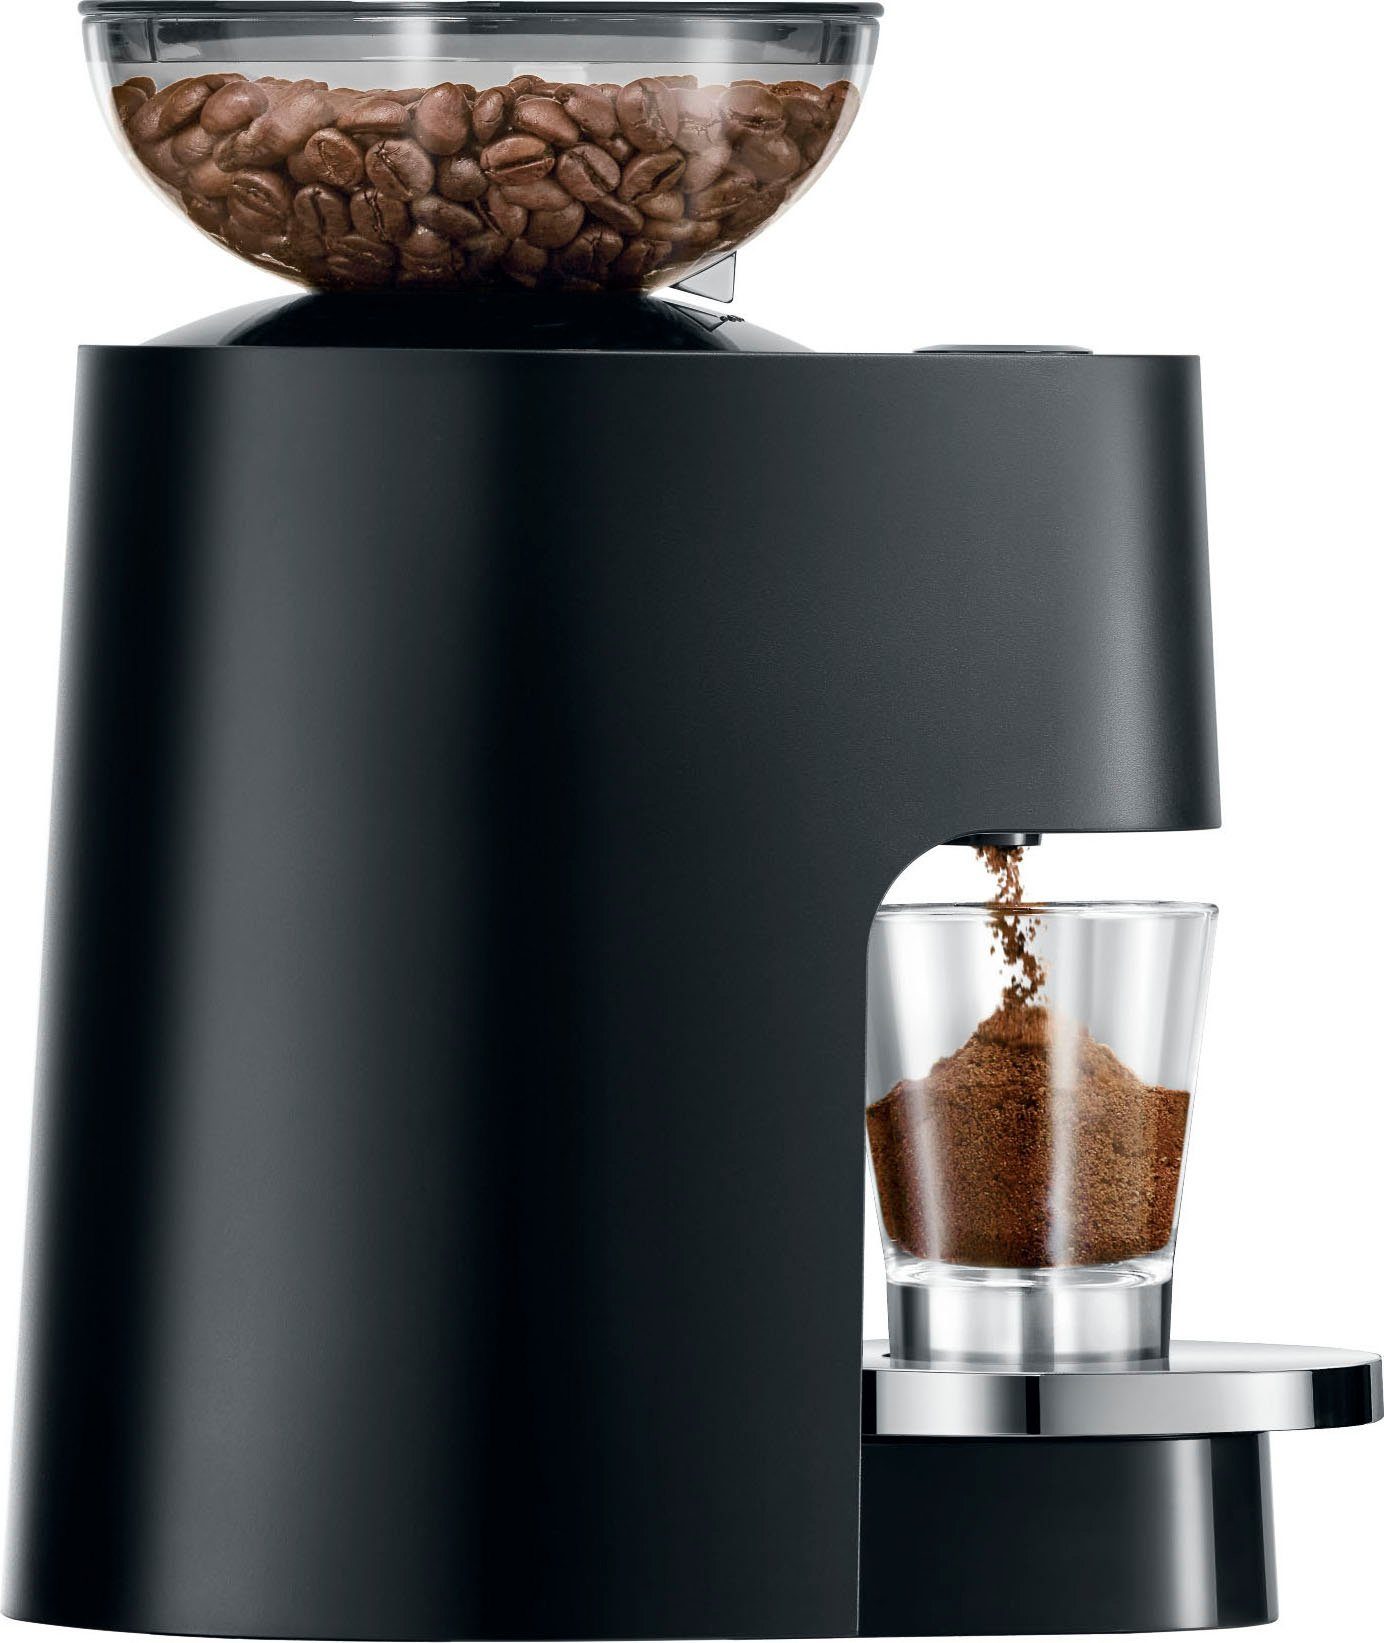 JURA 25048 W, P.A.G., Kegelmahlwerk, 150 g Bohnenbehälter 105 Kaffeemühle